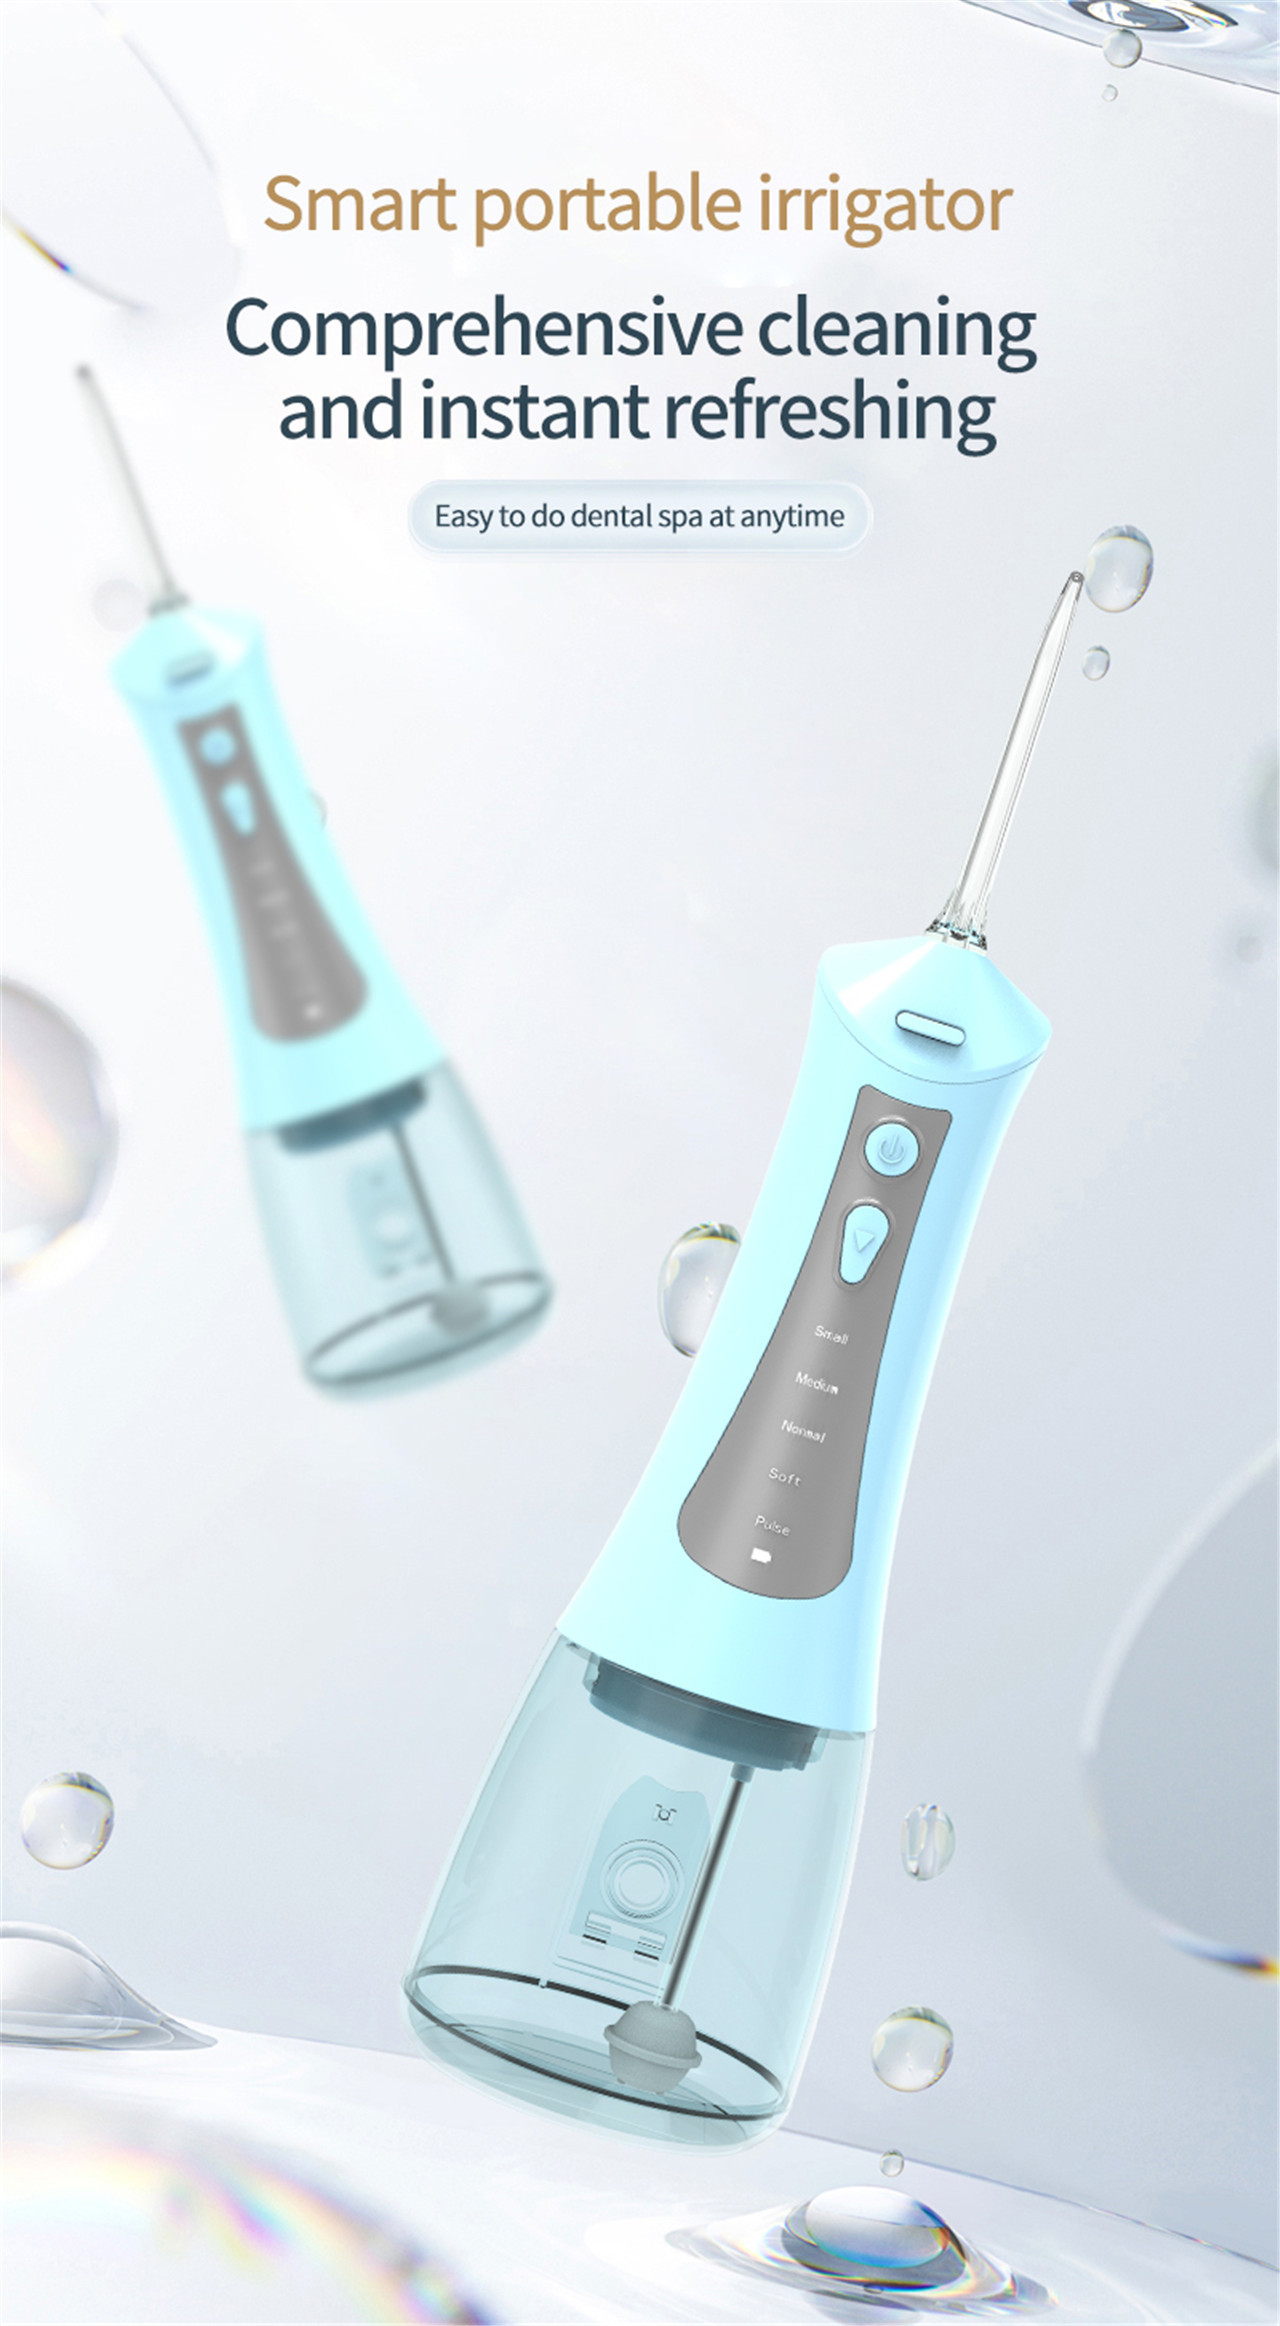 Өндөр даралтын шүдний усалгааны амны хөндийн арчилгааны шилдэг цахилгаан утас (1)